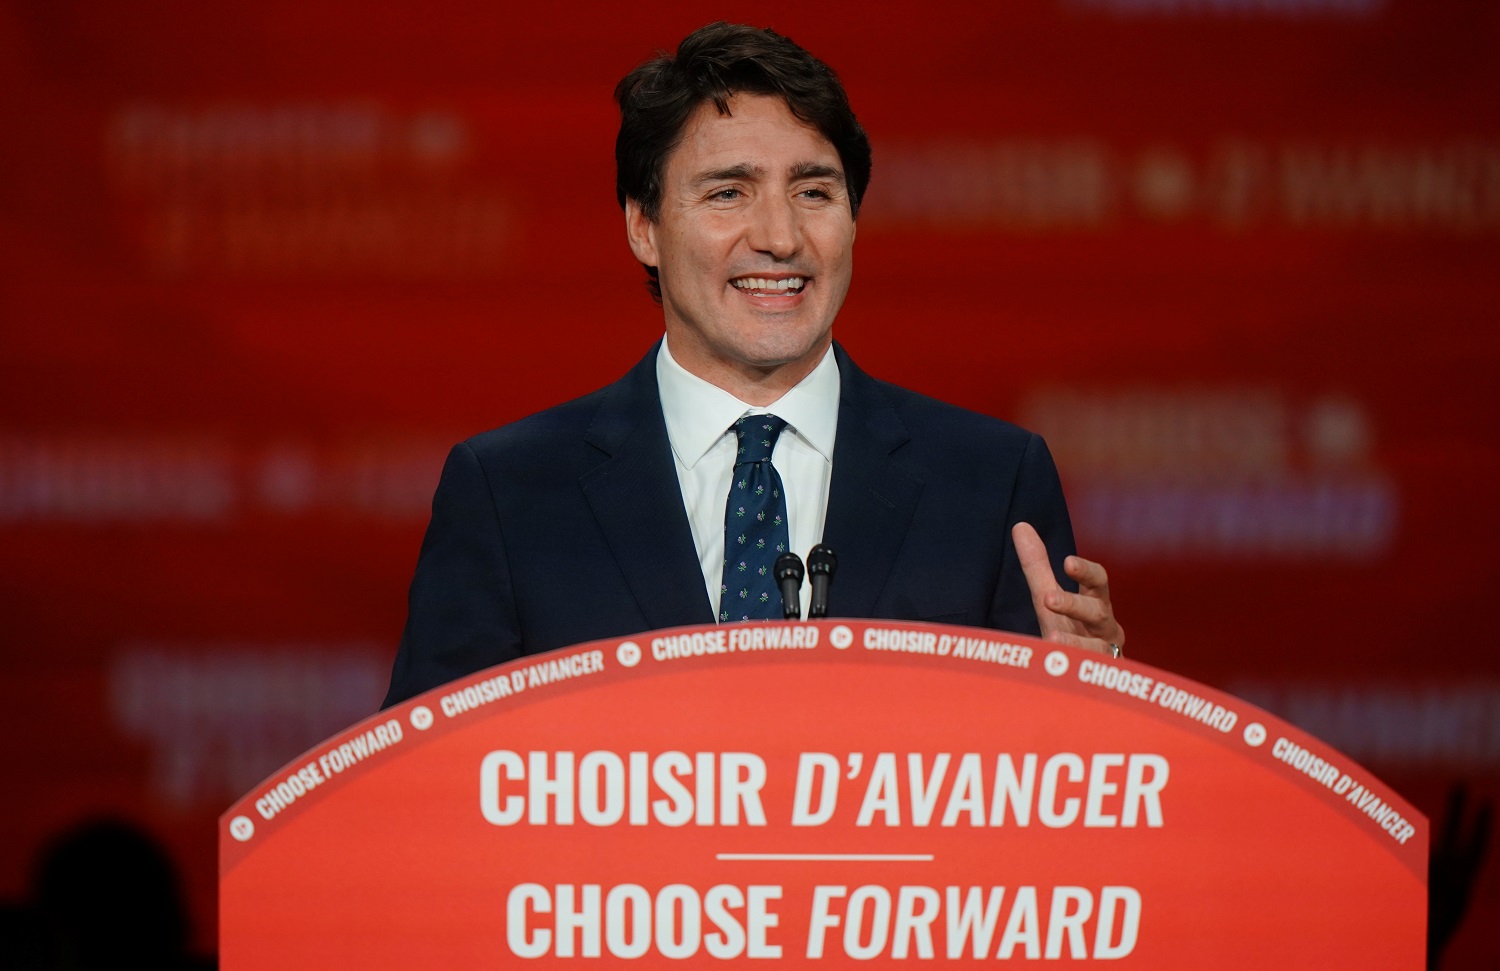  الزعيم الليبرالي ورئيس الوزراء الكندي جوستين ترودو بعد الانتخابات الفيدرالية في قصر المؤتمرات في مونتريال.كندا.22 أكتوبر 2019. (رويترز) / كارلو اليجري